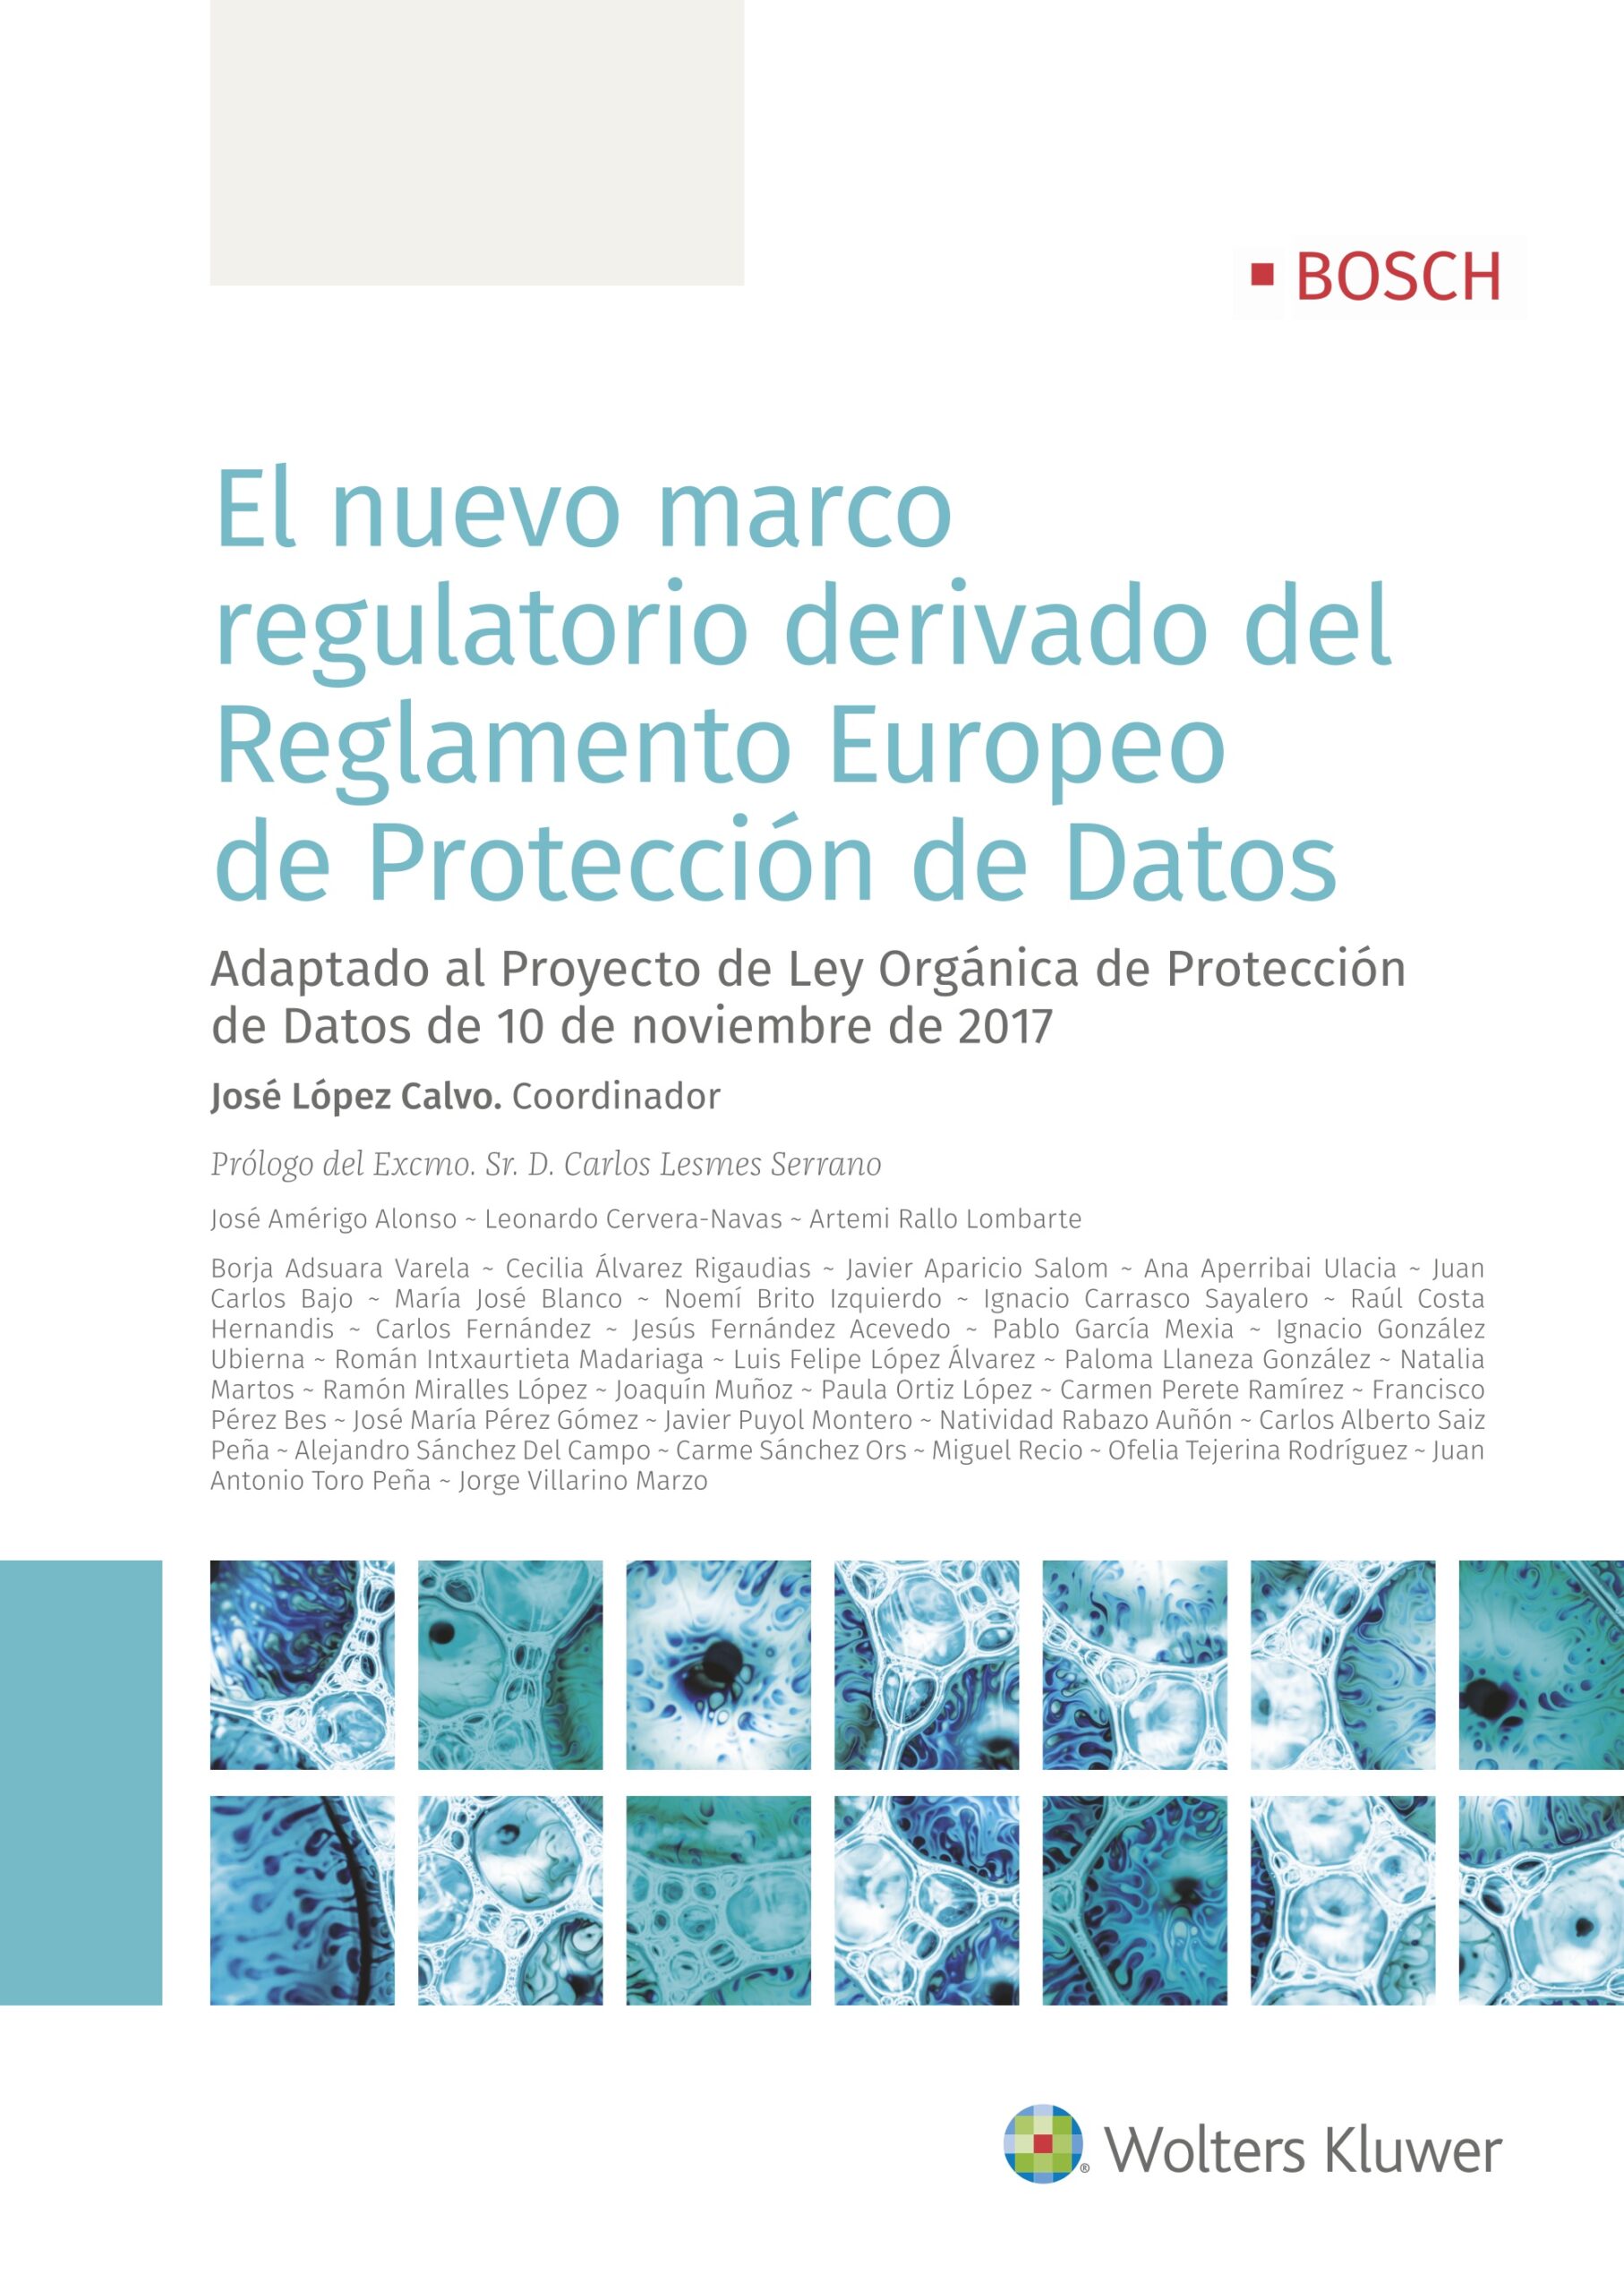 El Reglamento Europeo de Protección de Datos -en plena aplicación desde el 25 de mayo de 2018- es una norma caleidoscópica y compleja, cuyo análisis no puede hacerse sino desde diferentes aproximaciones y perspectivas.